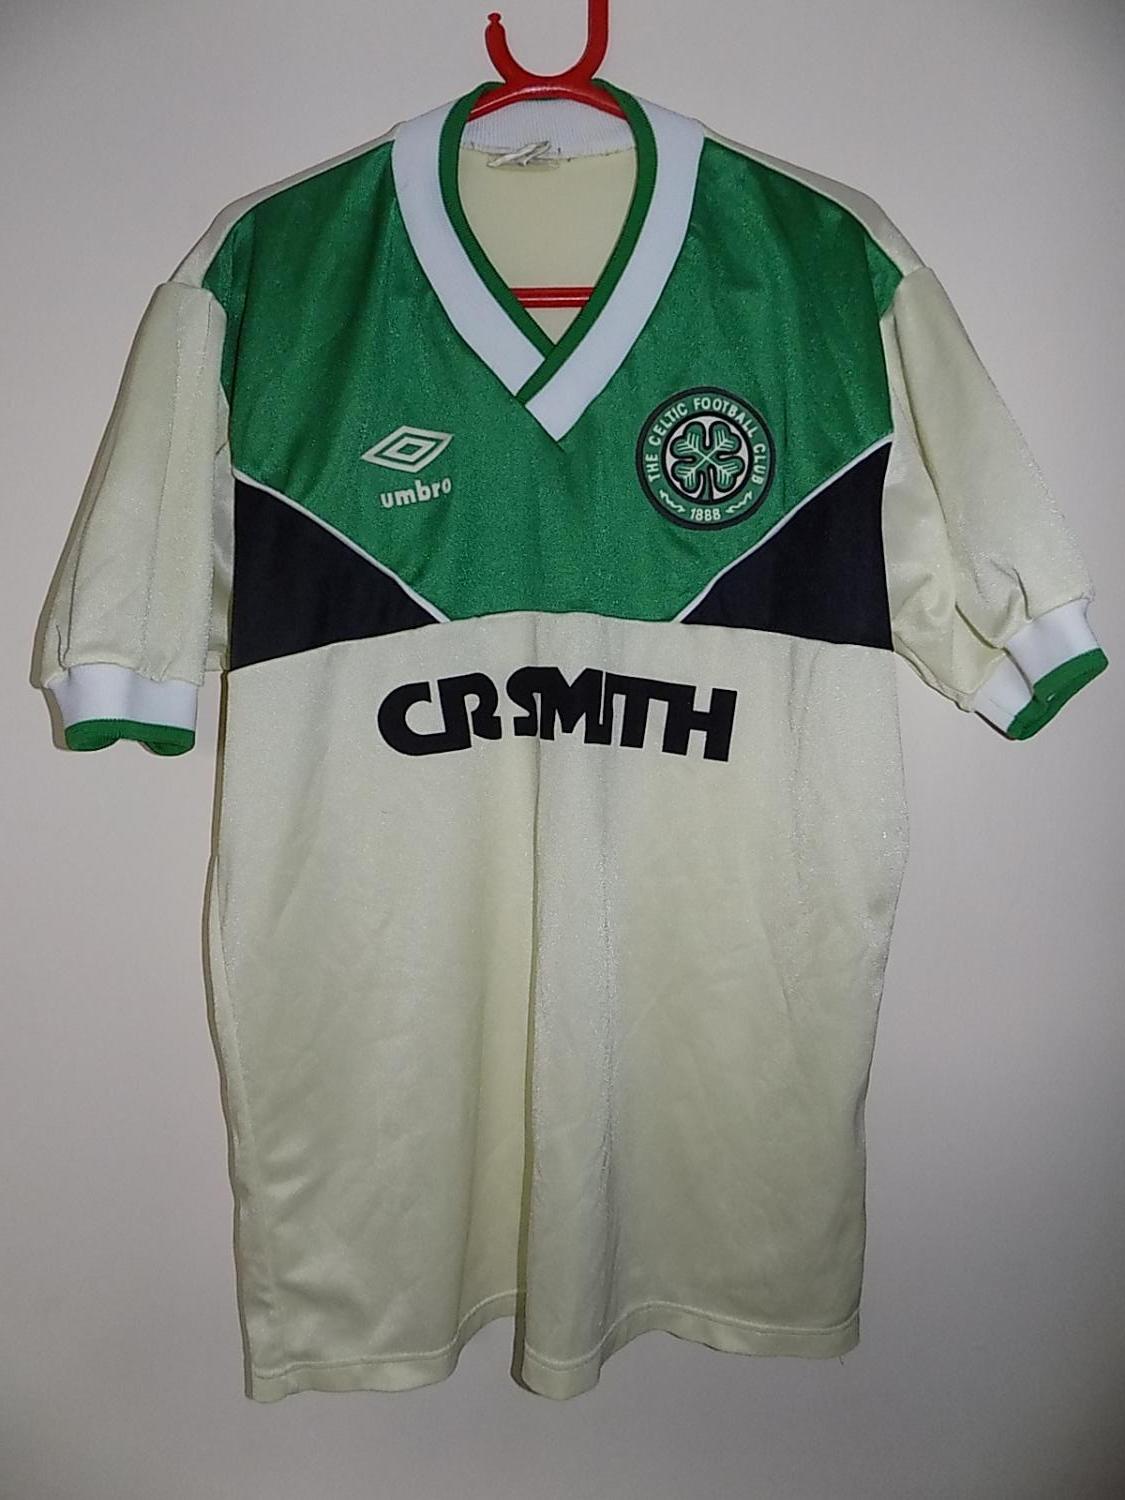 celtic away kit 1986